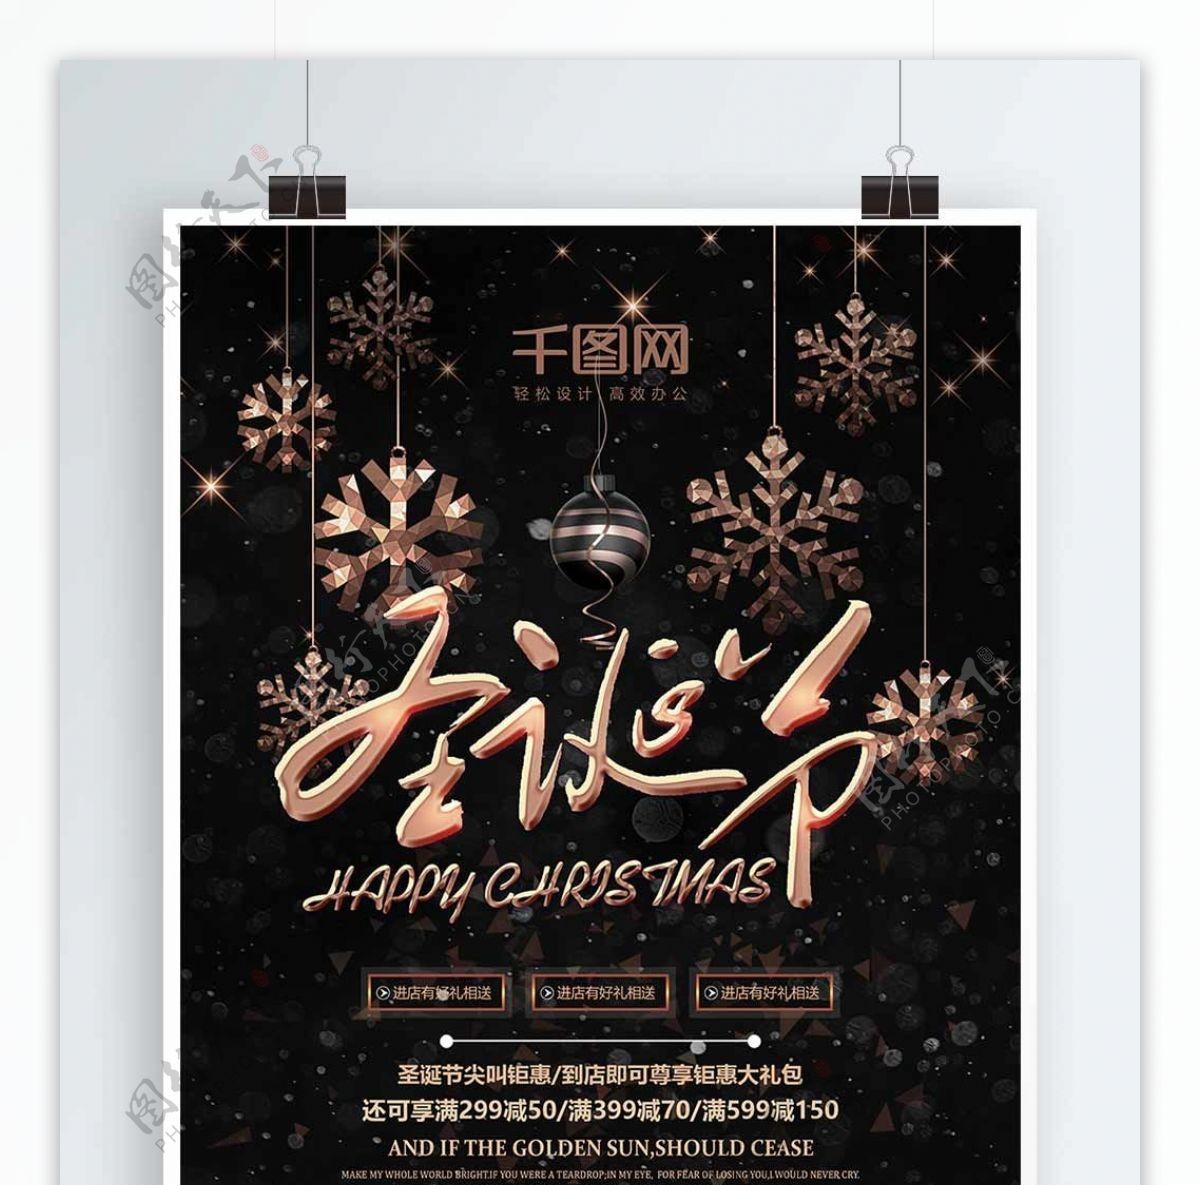 玫瑰金色圣诞节促销活动宣传海报设计